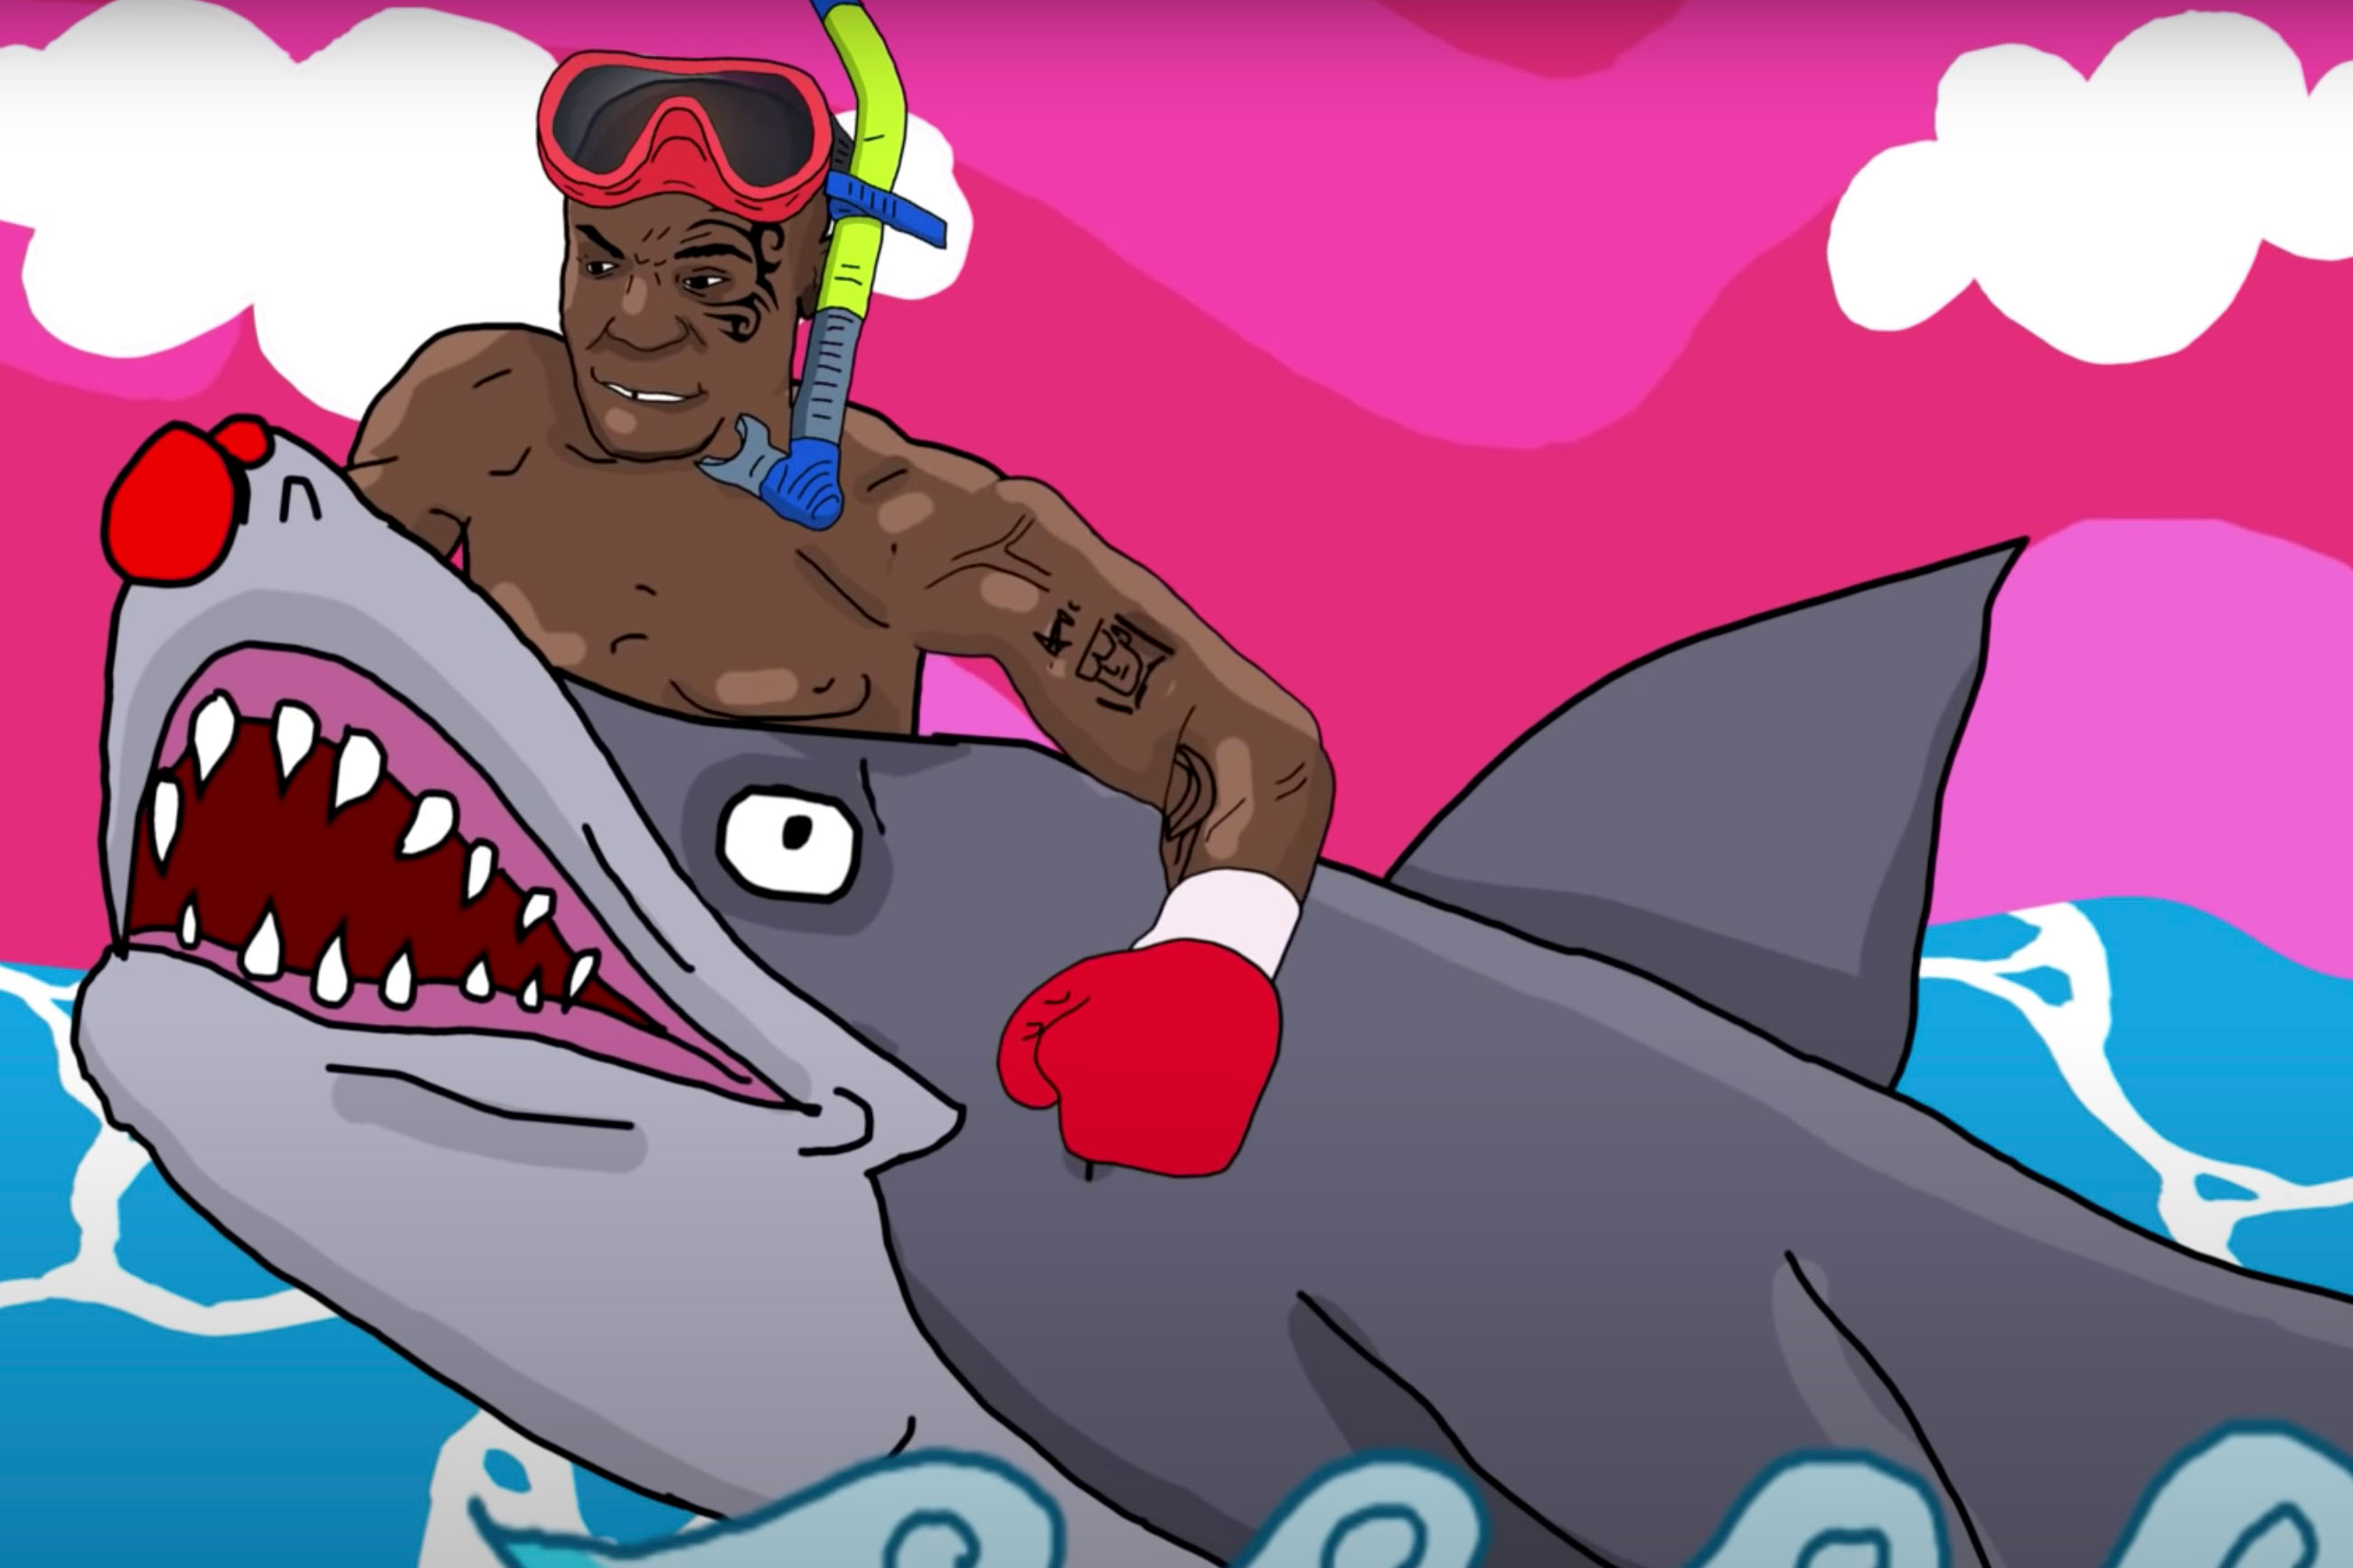 Võ sĩ Mike Tyson đấm cá mập trong MV ca nhạc mới